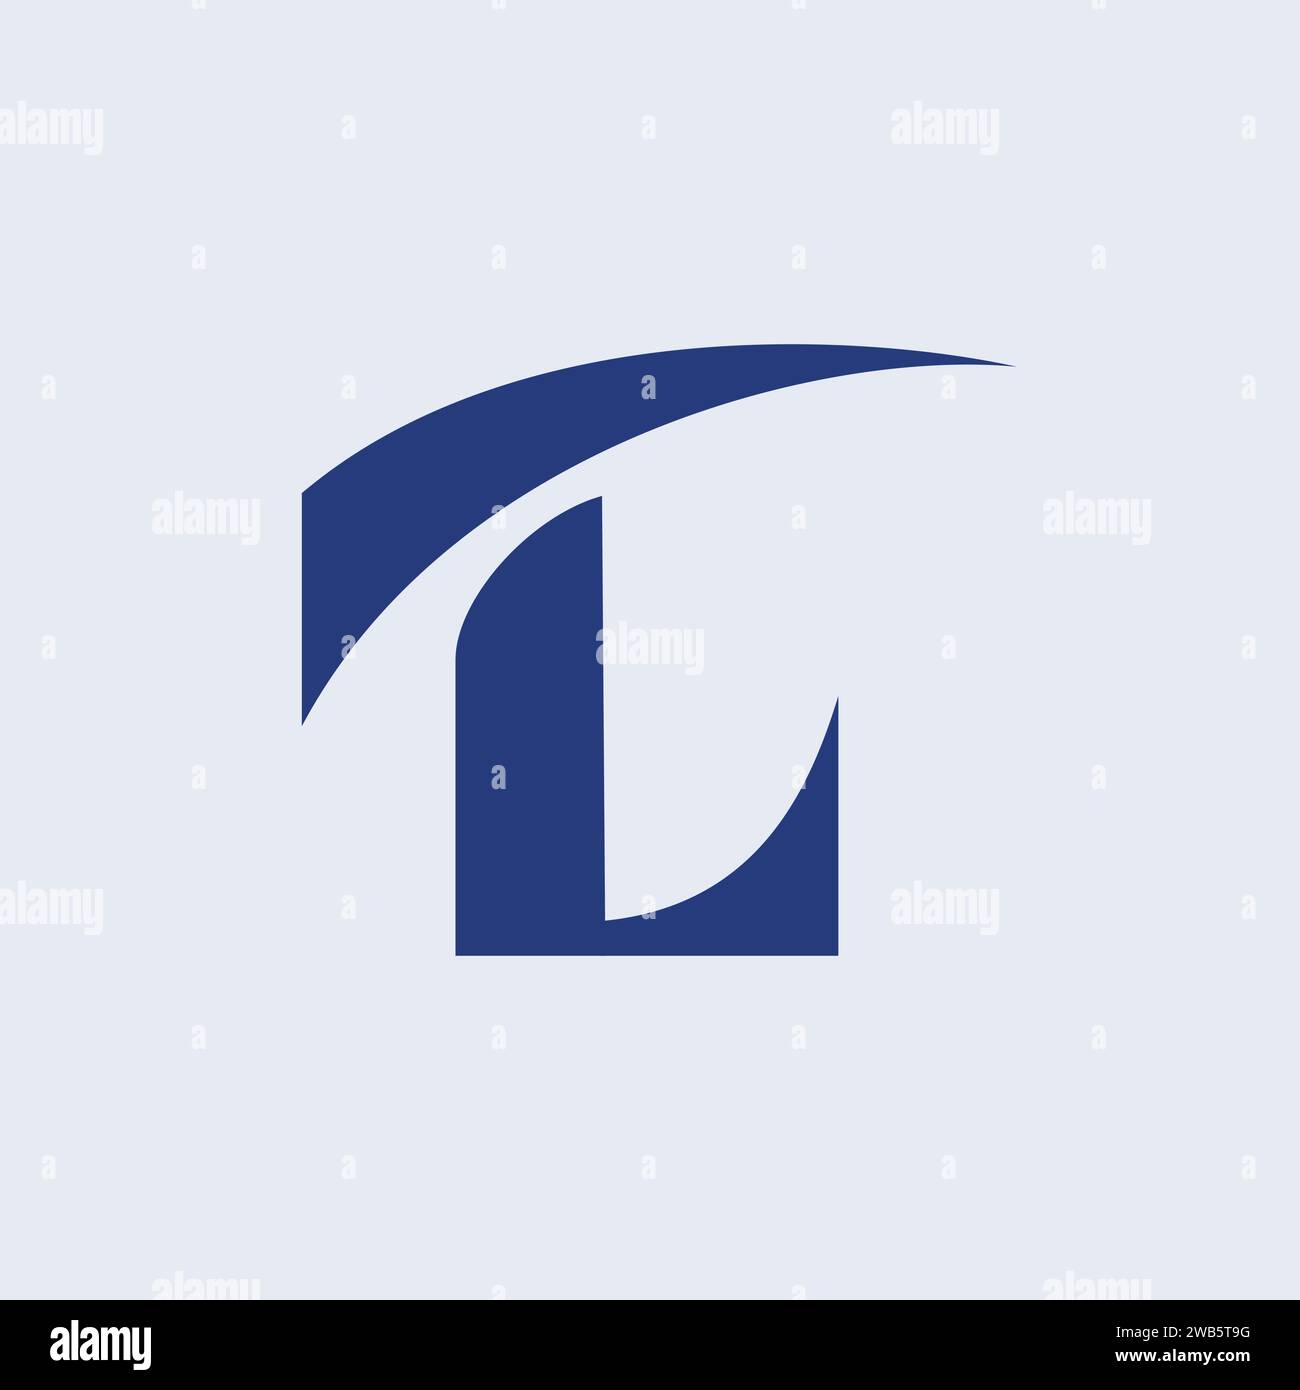 Un logo avec les initiales 'TL' avec le haut courbé vers le haut pour représenter la croissance et l'accélération, conçu comme un monogramme. Illustration de Vecteur